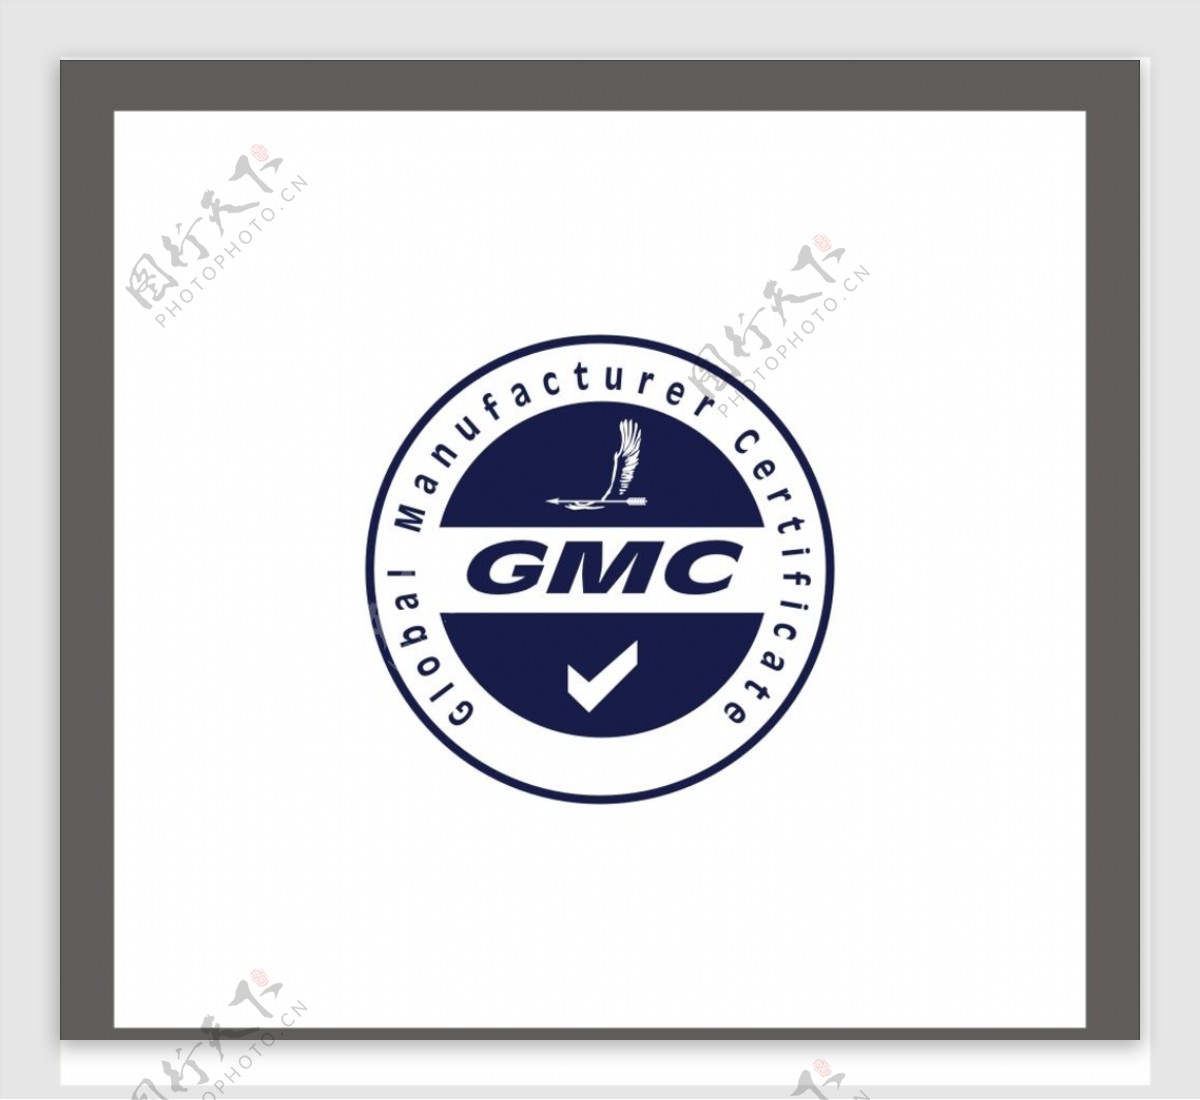 GMC标志图片